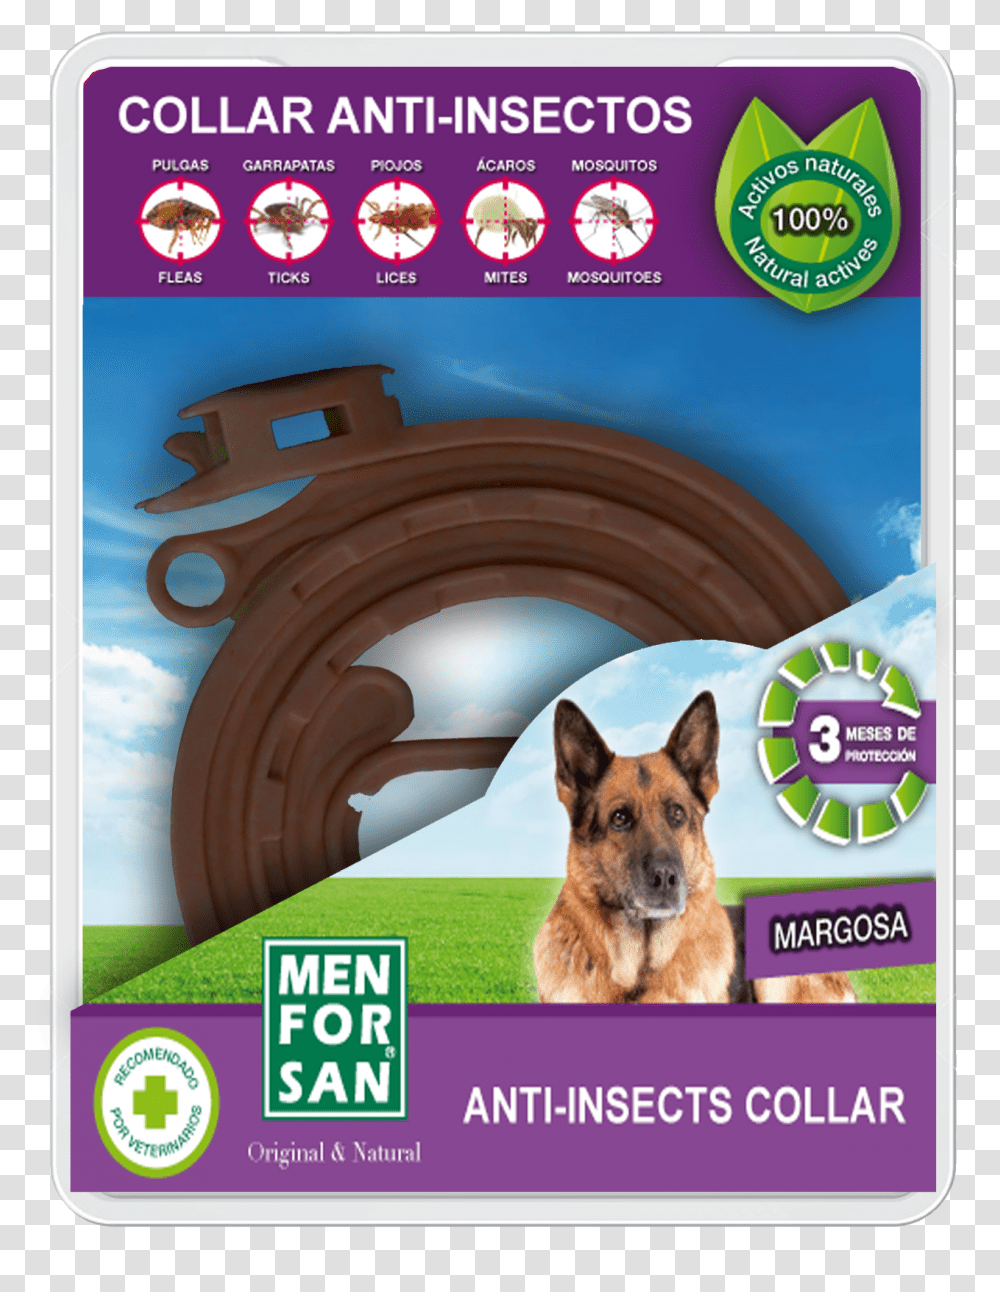 Collar Anti Insectos Menforsan, Dog, Pet, Canine, Animal Transparent Png